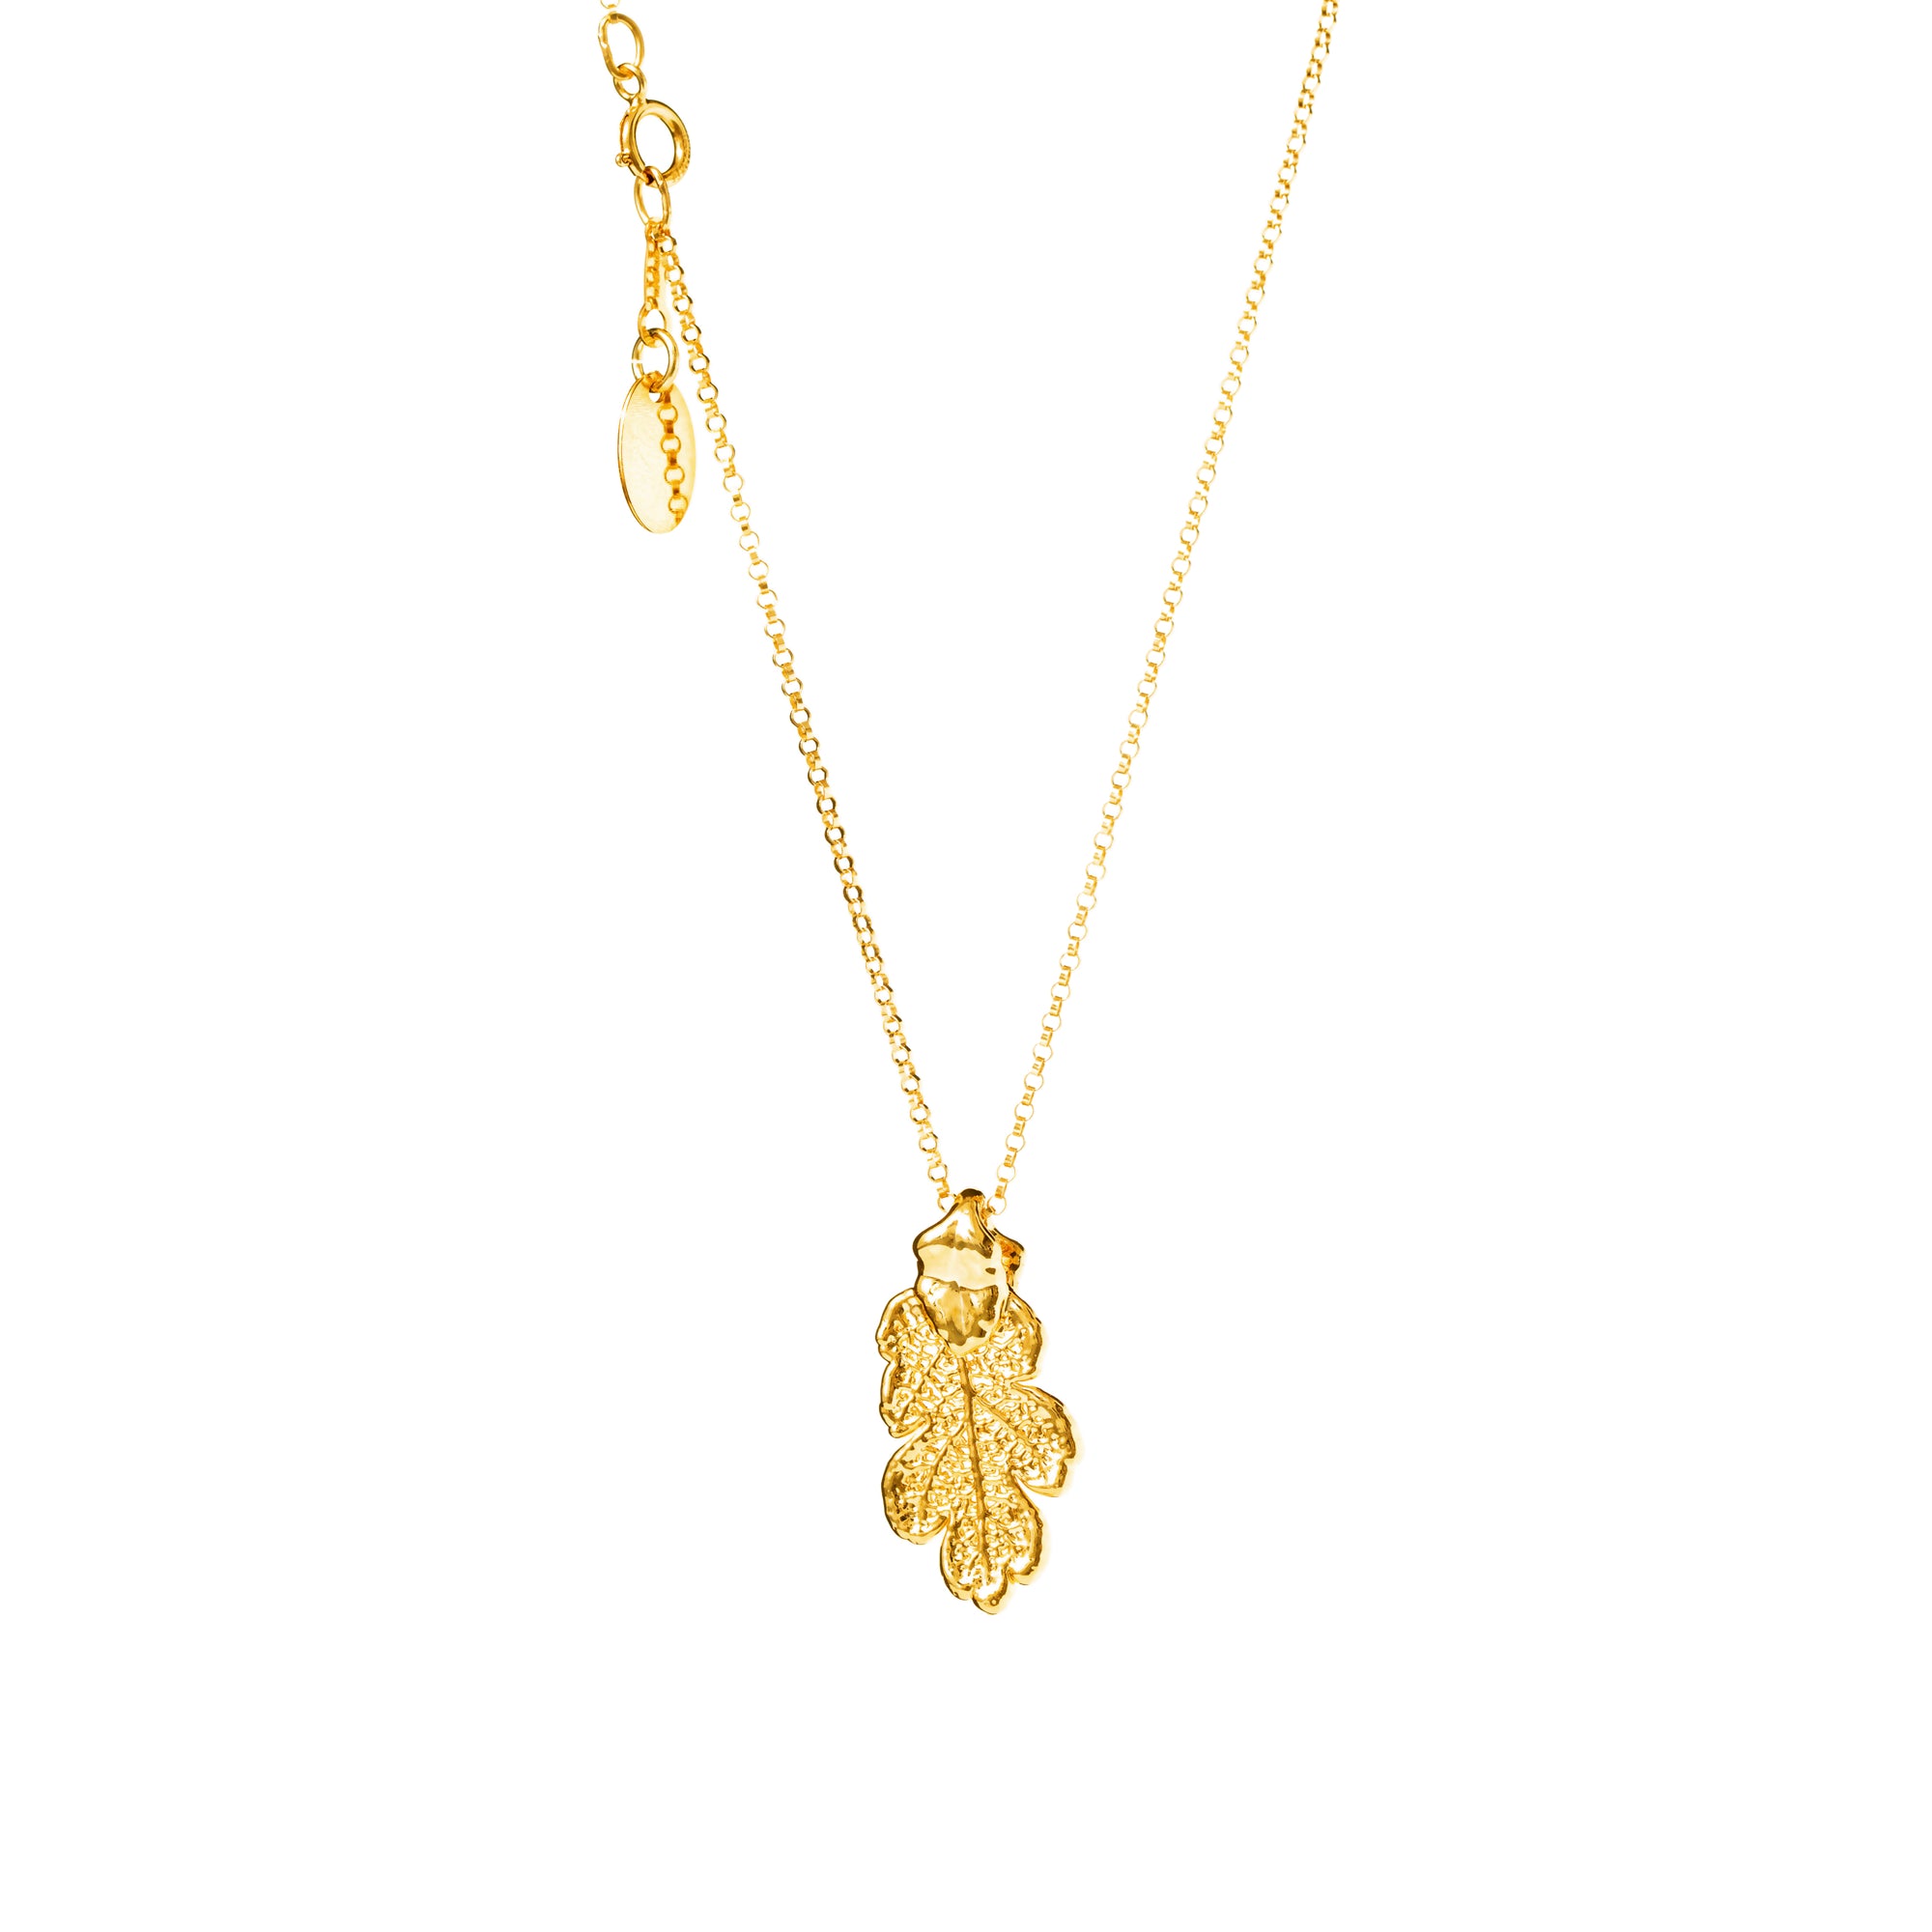 *REAL LEAVES* Be-leaf Gold-filled Necklace w/24k Gold Leaf Charm